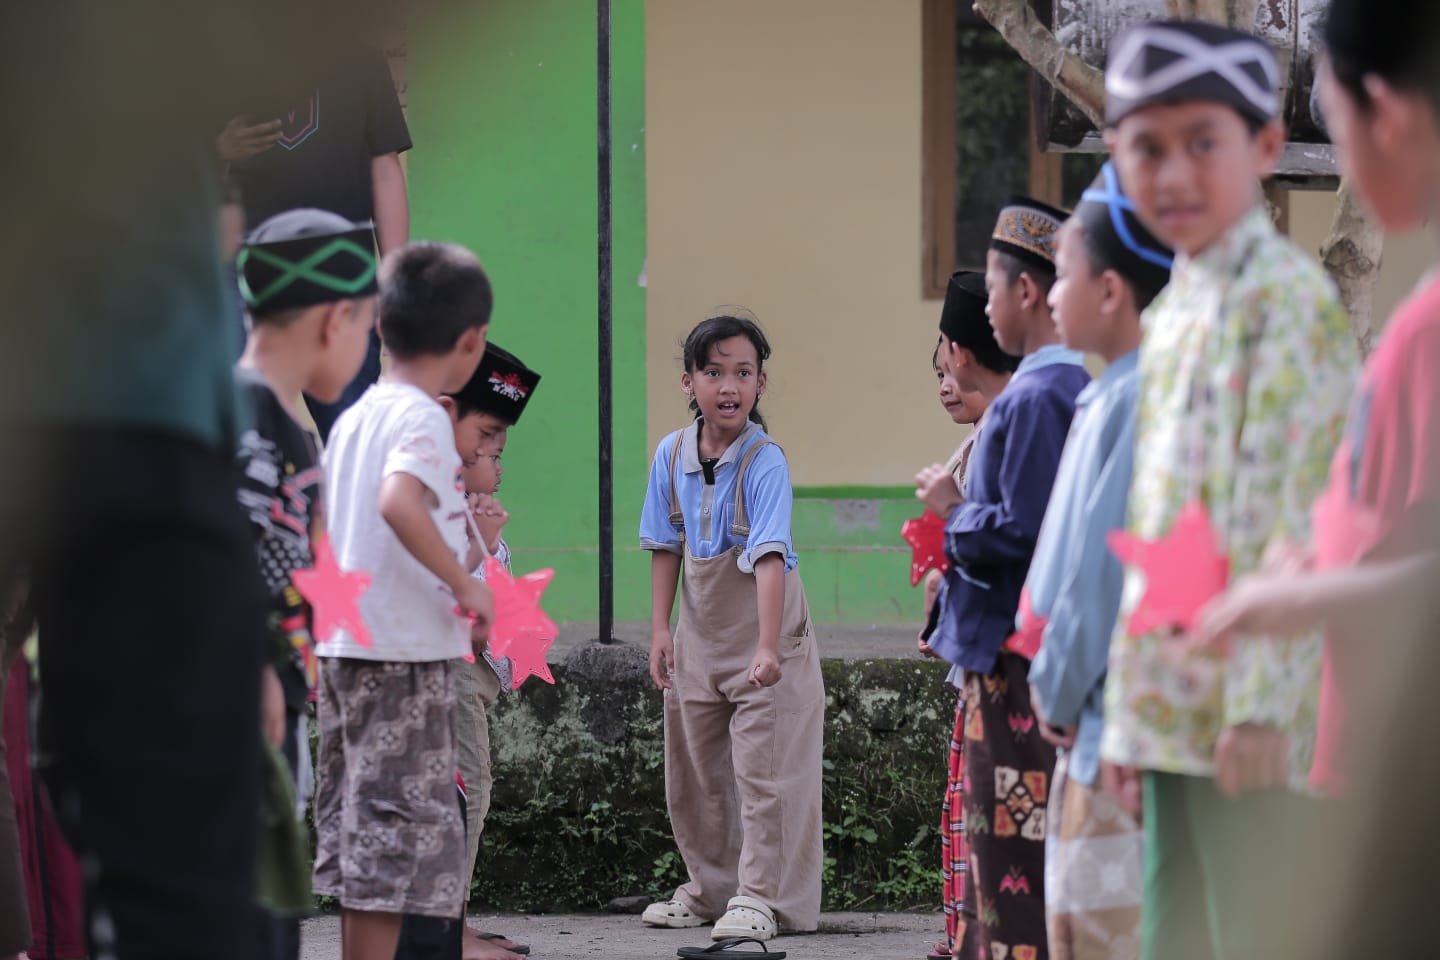 Festival Sahabat Anak Ceria: Hana dan Arjuna Turut Ramaikan Safari LDP